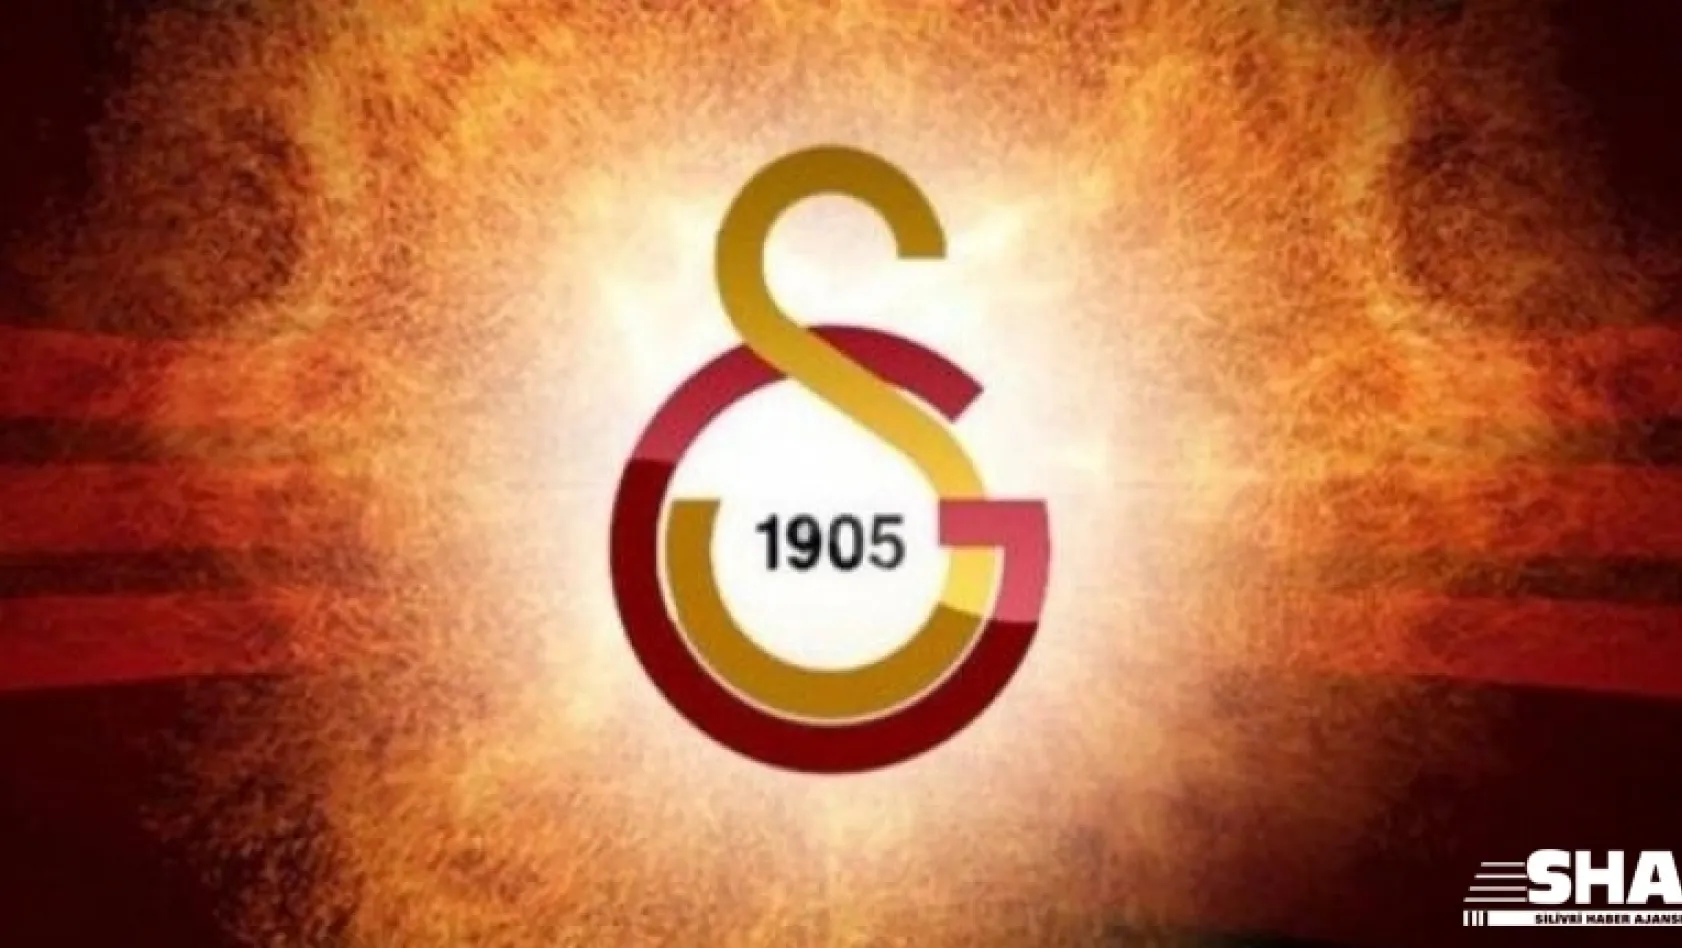 Galatasaray, Avrupa'da 100. galibiyetini aldı